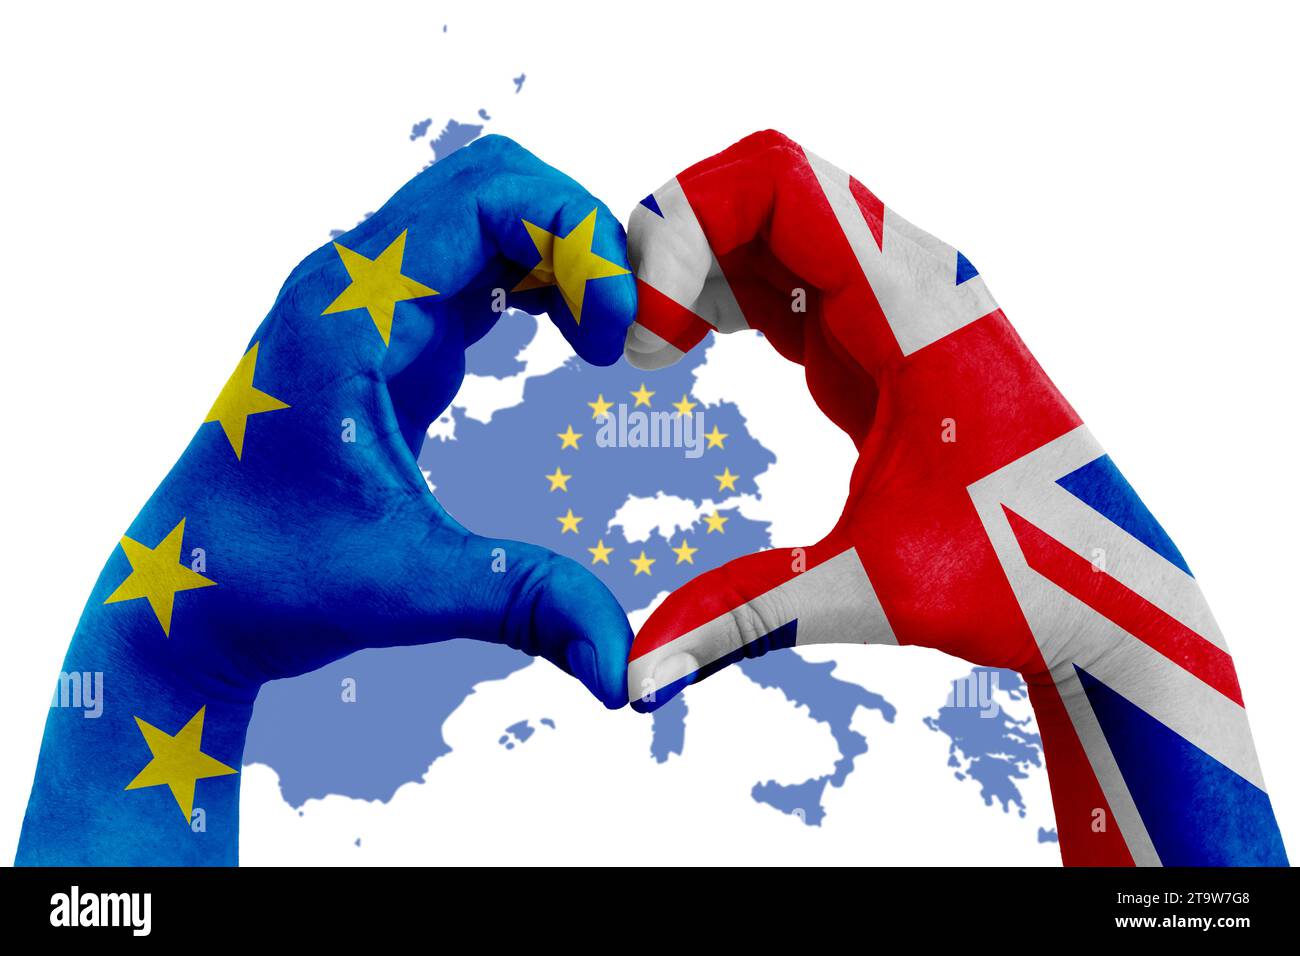 brexit, les mains de l'homme en forme de cœur modelé avec le drapeau de l'Union européenne bleue et drapeau de la grande-bretagne royaume-uni sur la carte de l'europe avec des étoiles jaunes, vote référendum pour le concept de sortie du royaume-uni Banque D'Images